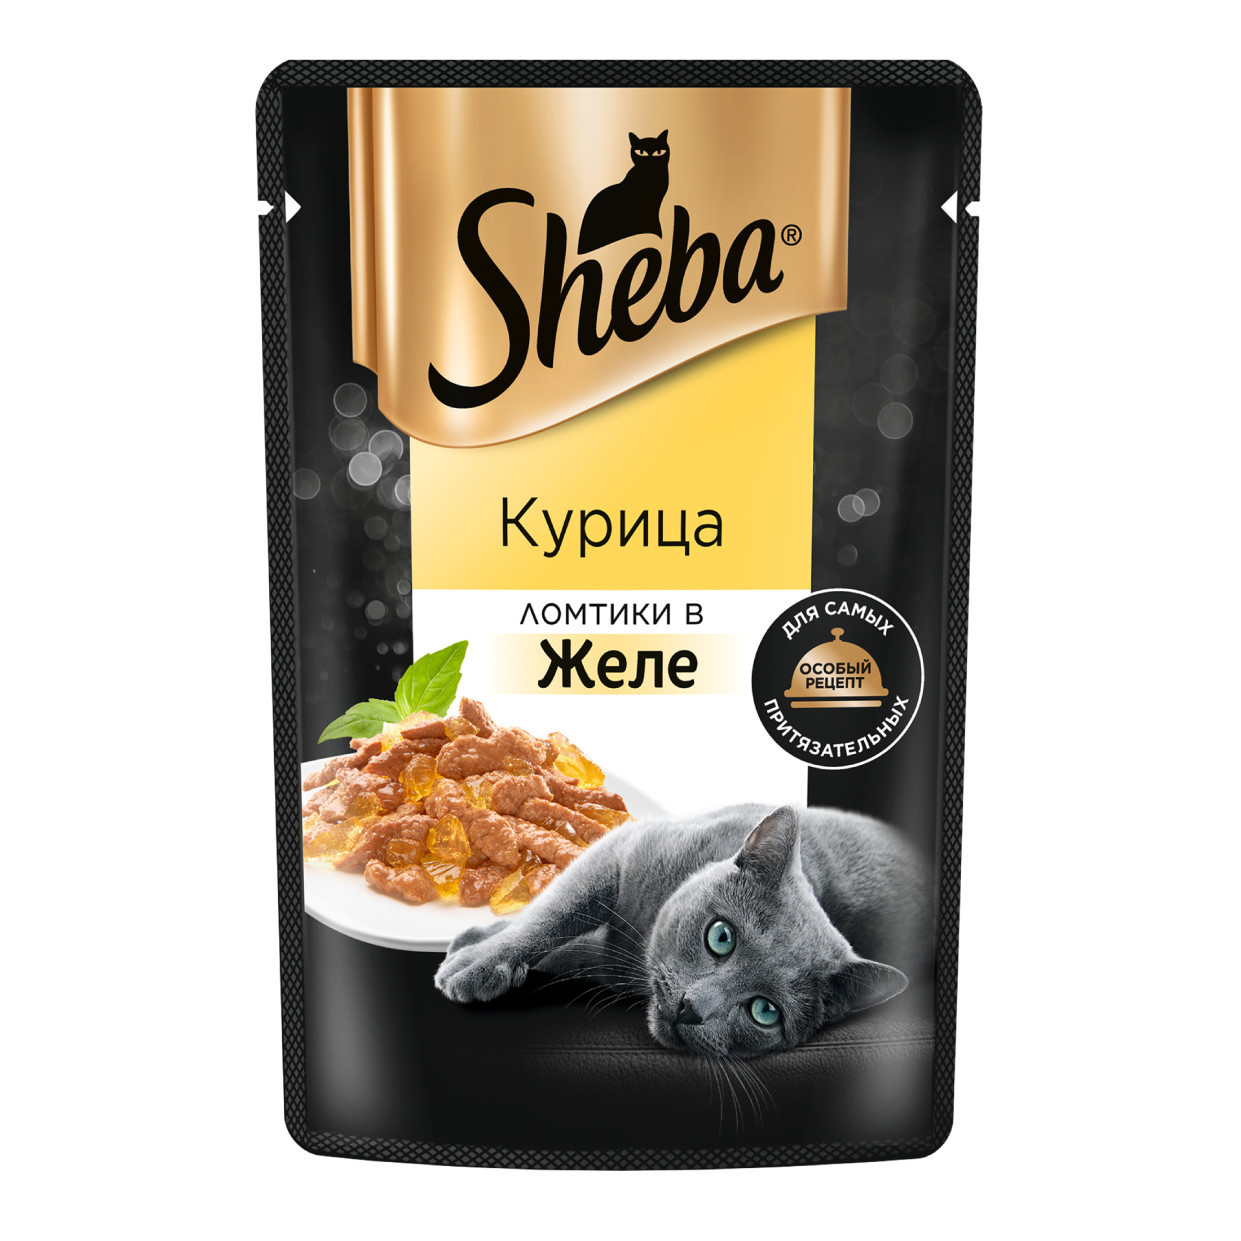 Sheba влажный корм для кошек «Ломтики в желе с курицей» (75 г)